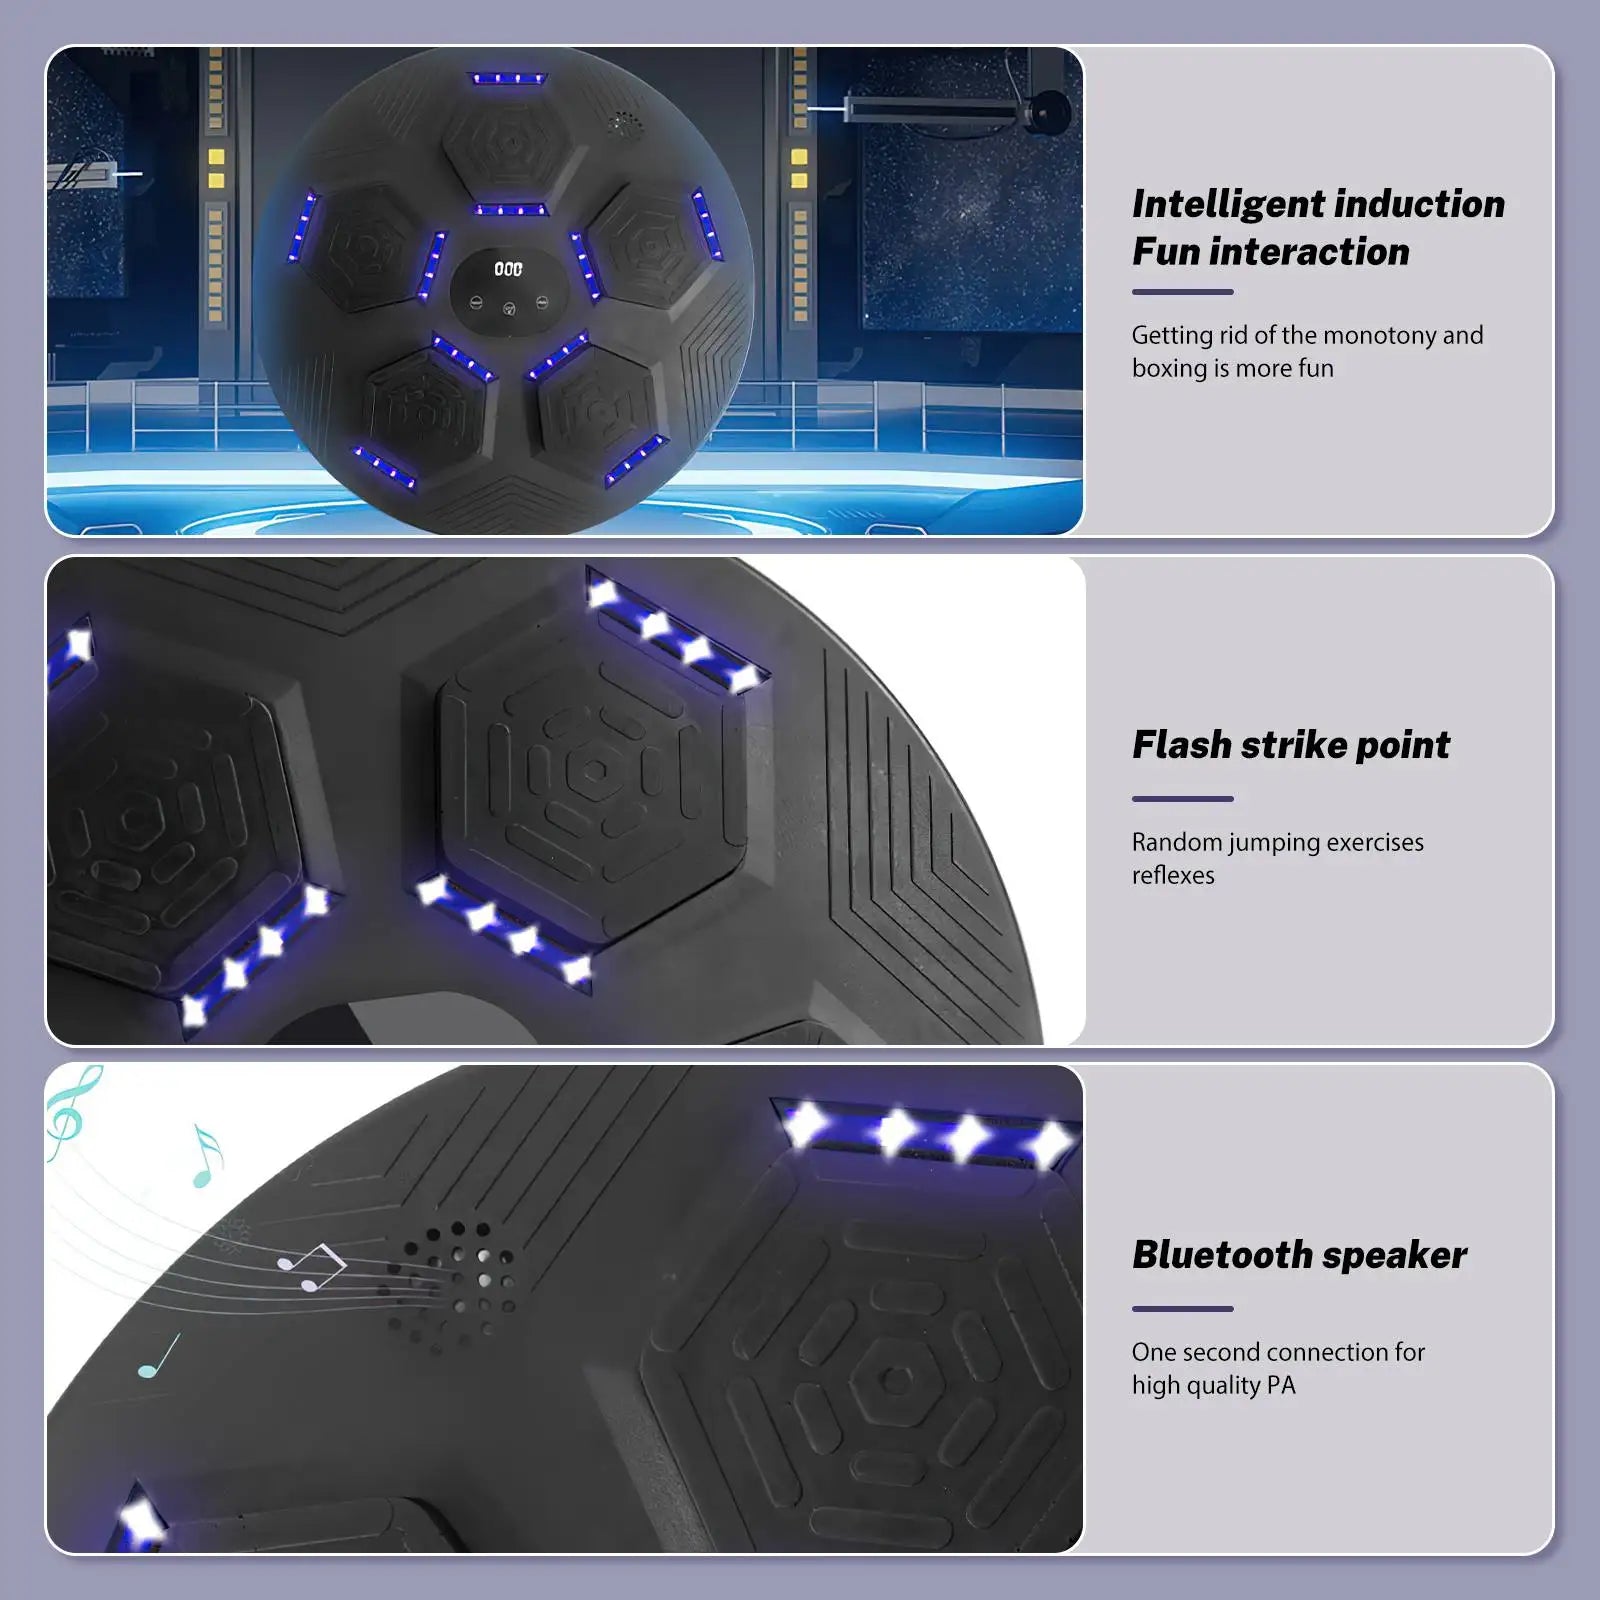 Boksmachine, Bluetooth-connectiviteit, LED-verlicht doelwit